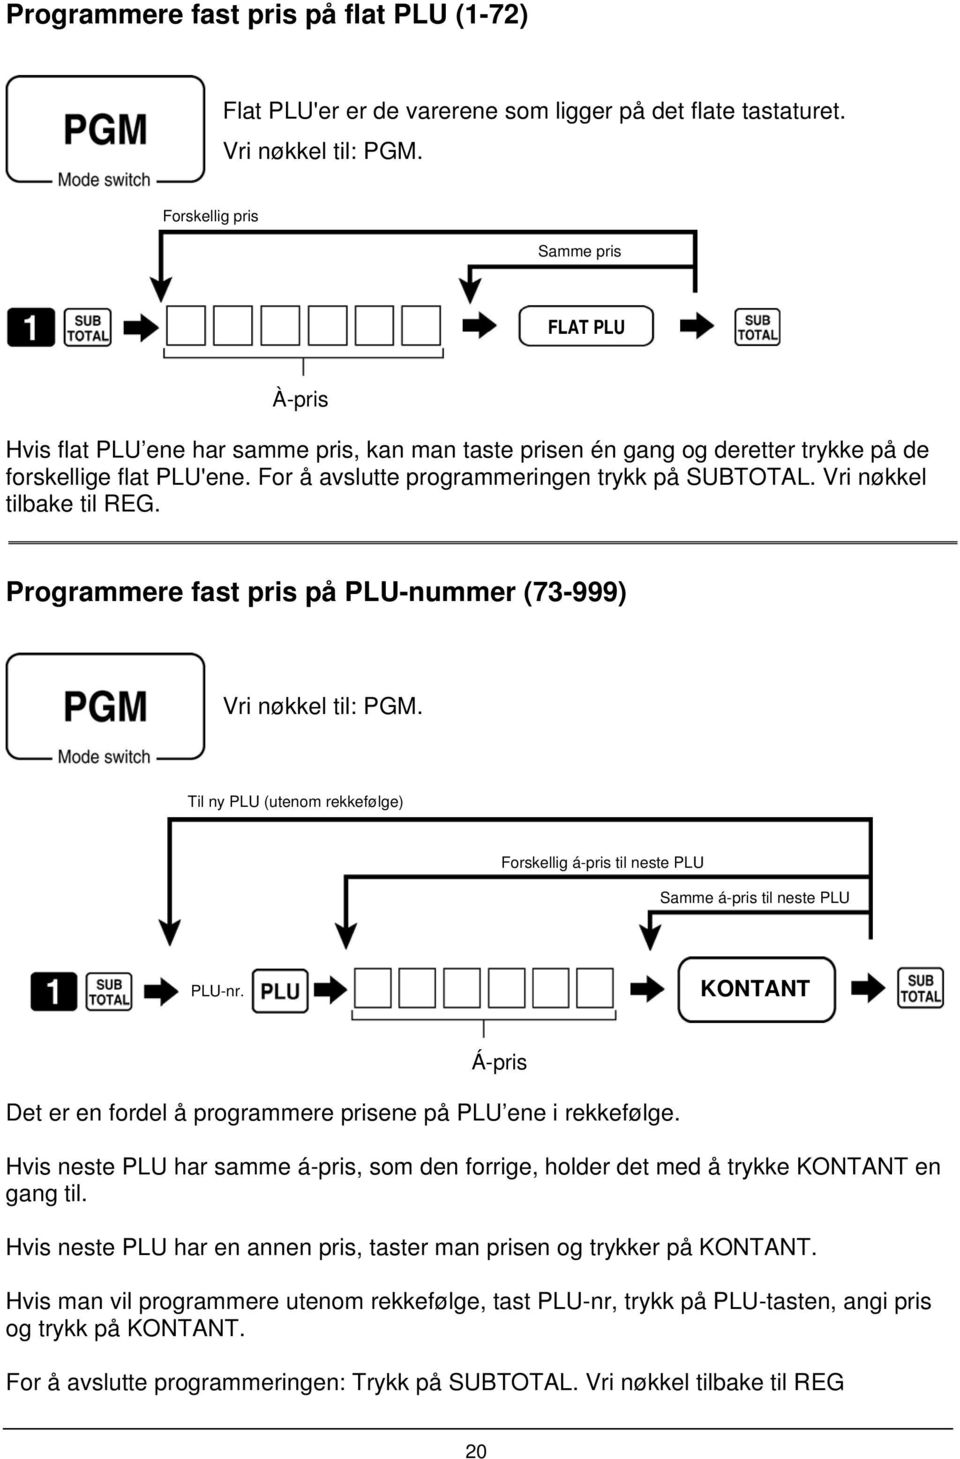 For å avslutte programmeringen trykk på SUBTOTAL. Vri nøkkel tilbake til REG. Programmere fast pris på PLU-nummer (73-999) Vri nøkkel til: PGM.